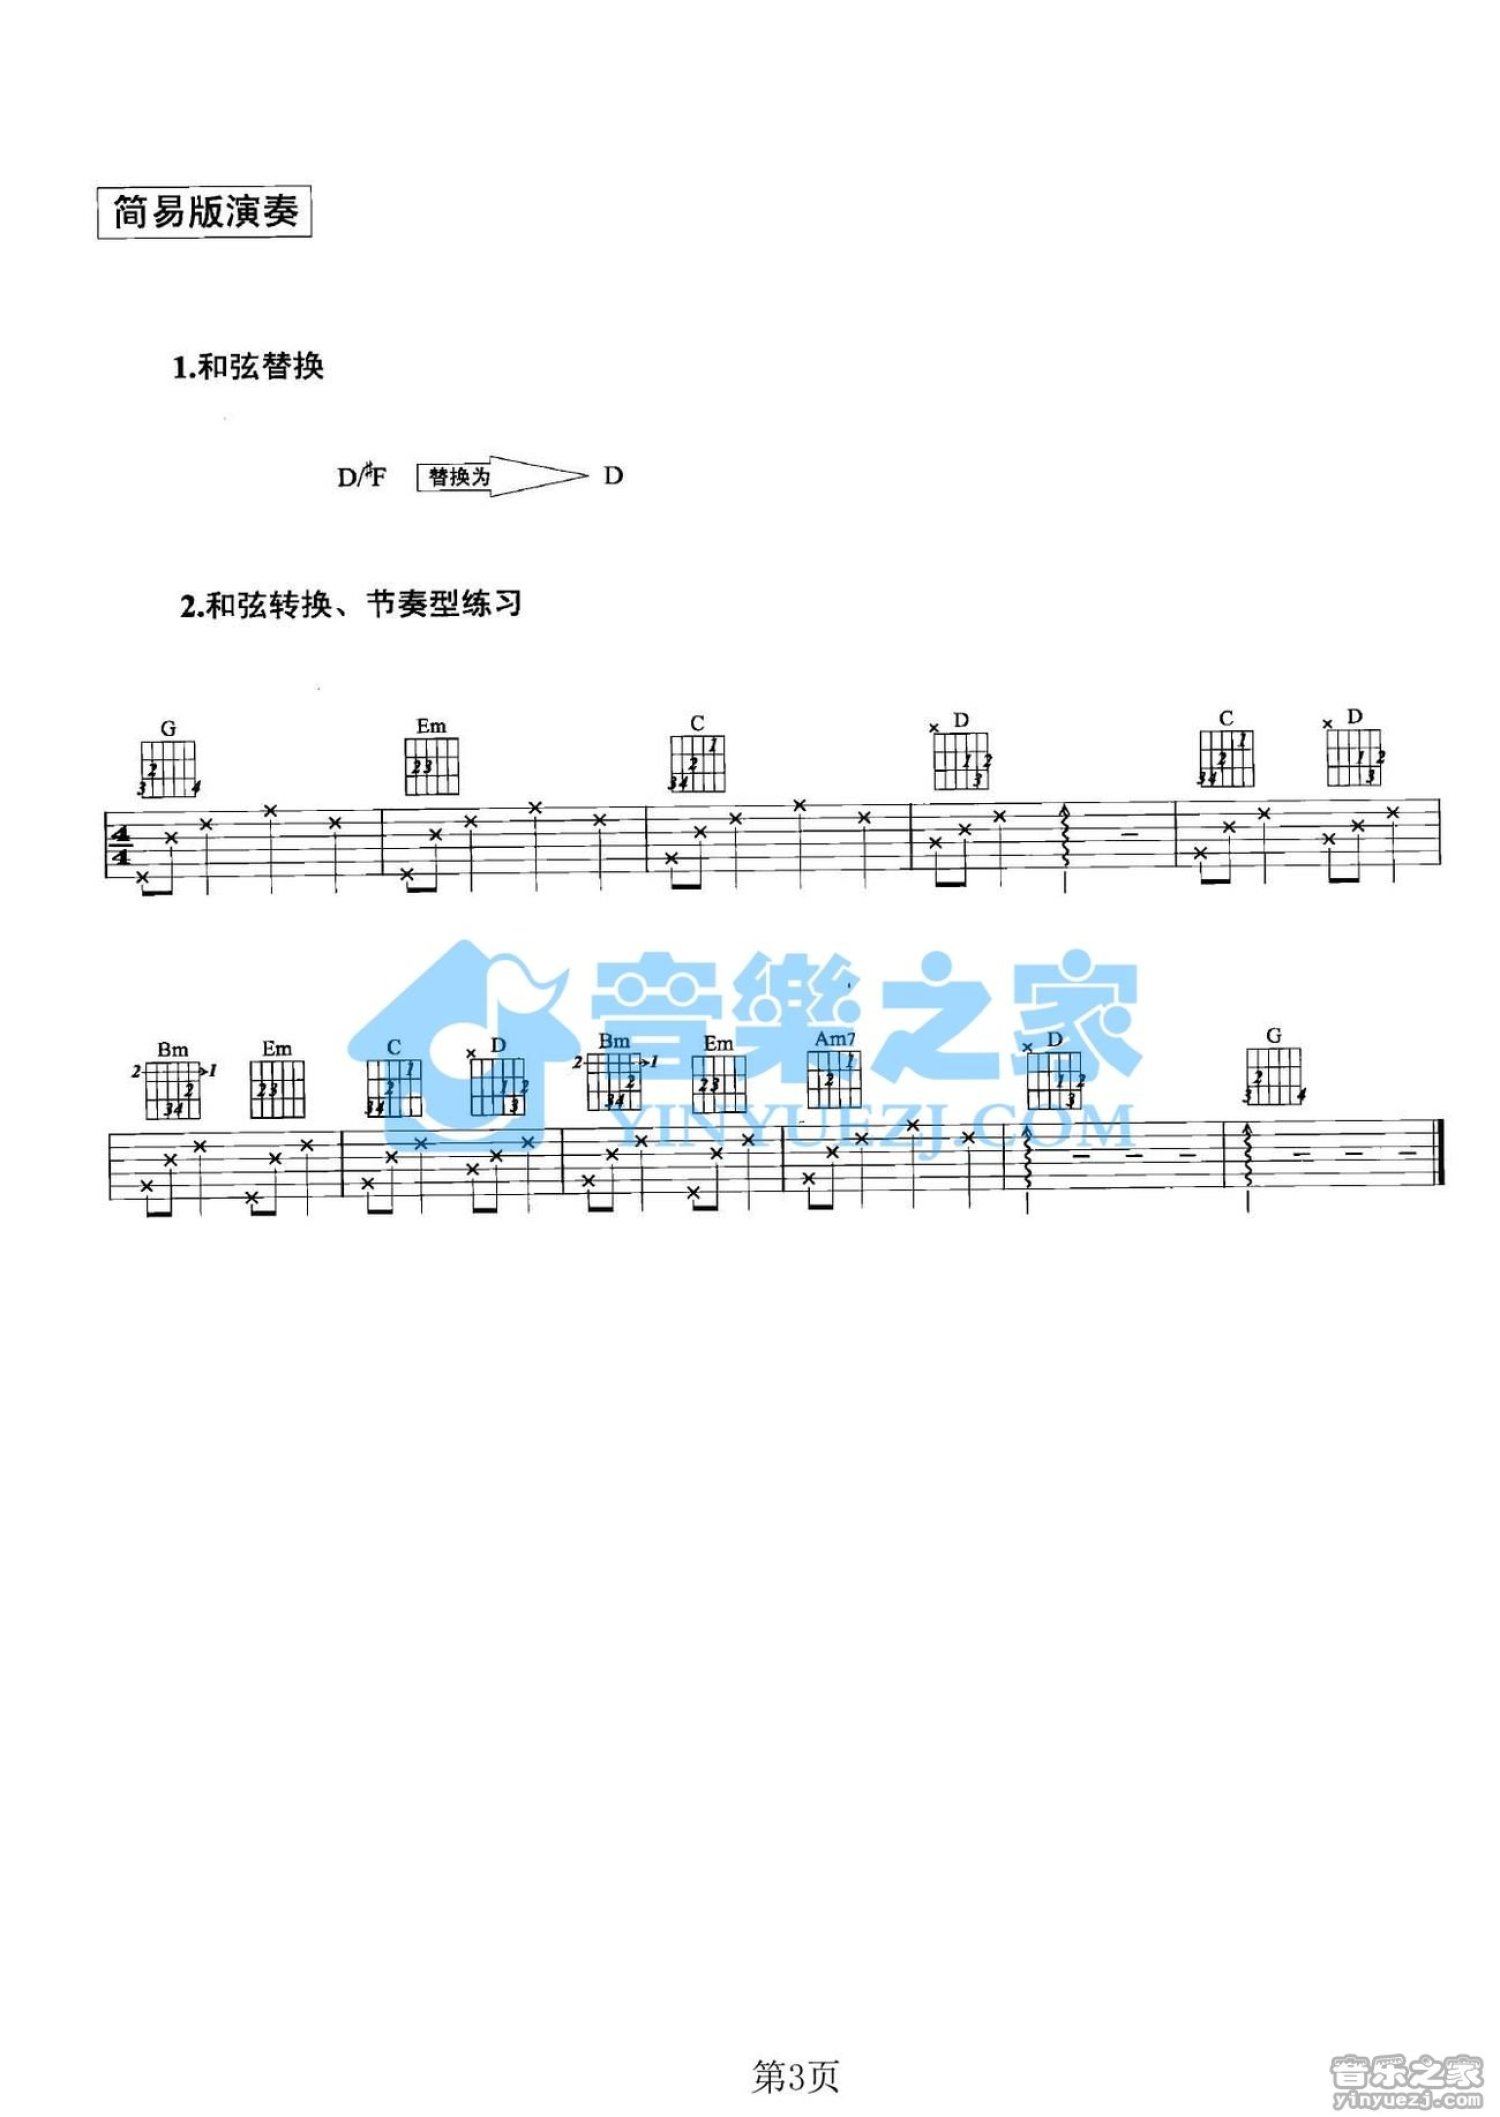 罗志祥【爱不单行吉他谱】_在线免费打印下载-爱弹琴乐谱网